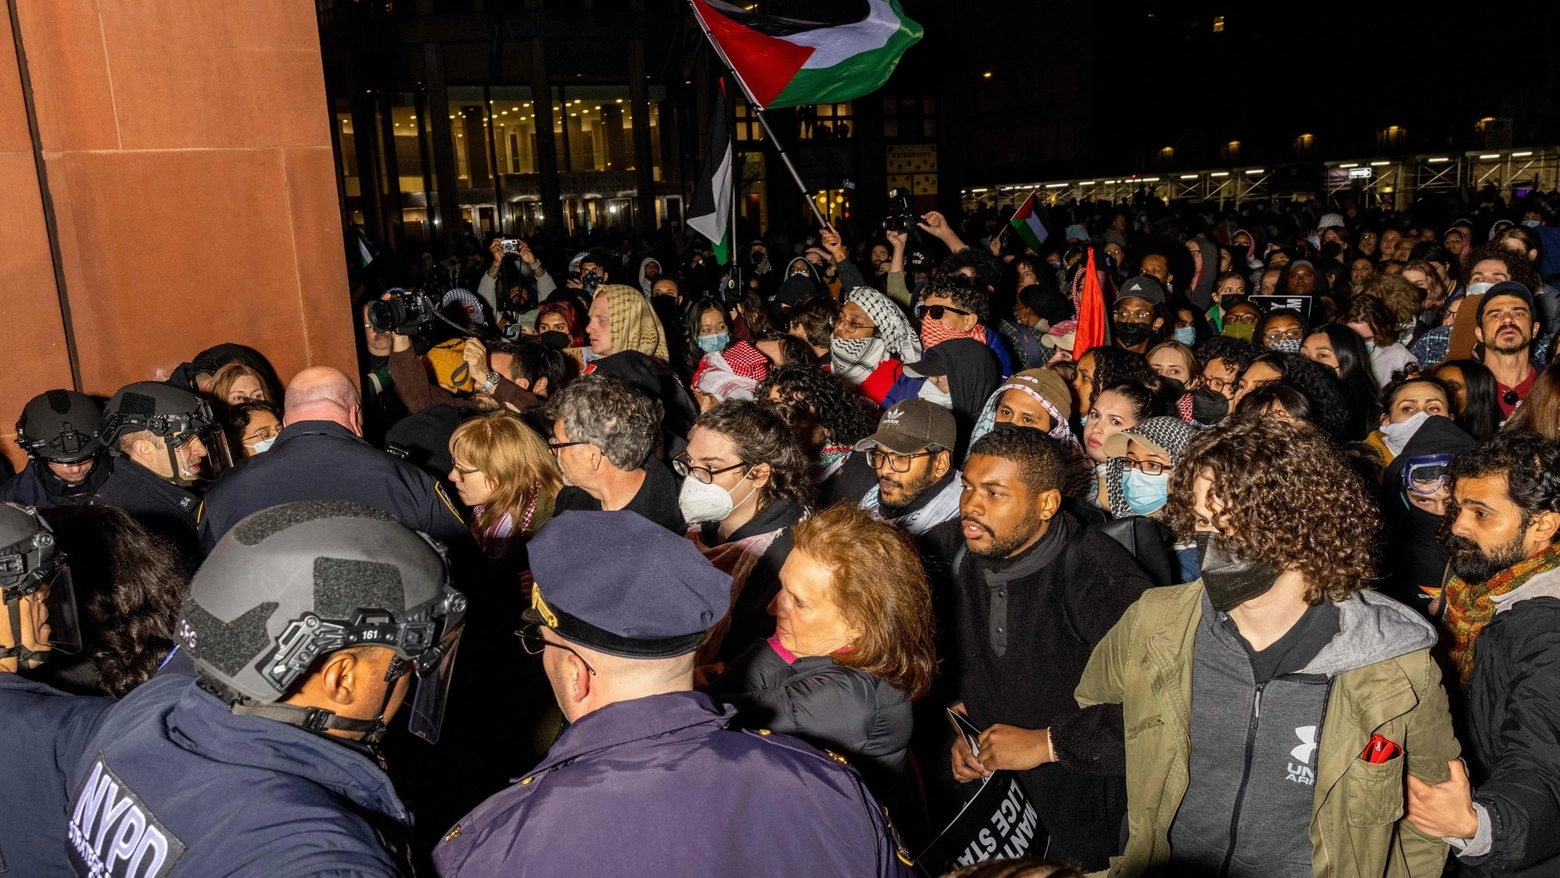 Manifestazioni studentesche da Yale a Berkley, caos e scontri. Alla Columbia, epicentro delle tensioni, le lezioni in presenza sono state sospese. Tanti i professori schierati con i ragazzi. “Condanno le iniziative antisemite – ha detto Biden – ma anche chi non capisce quello che sta accade ai palestinesi”